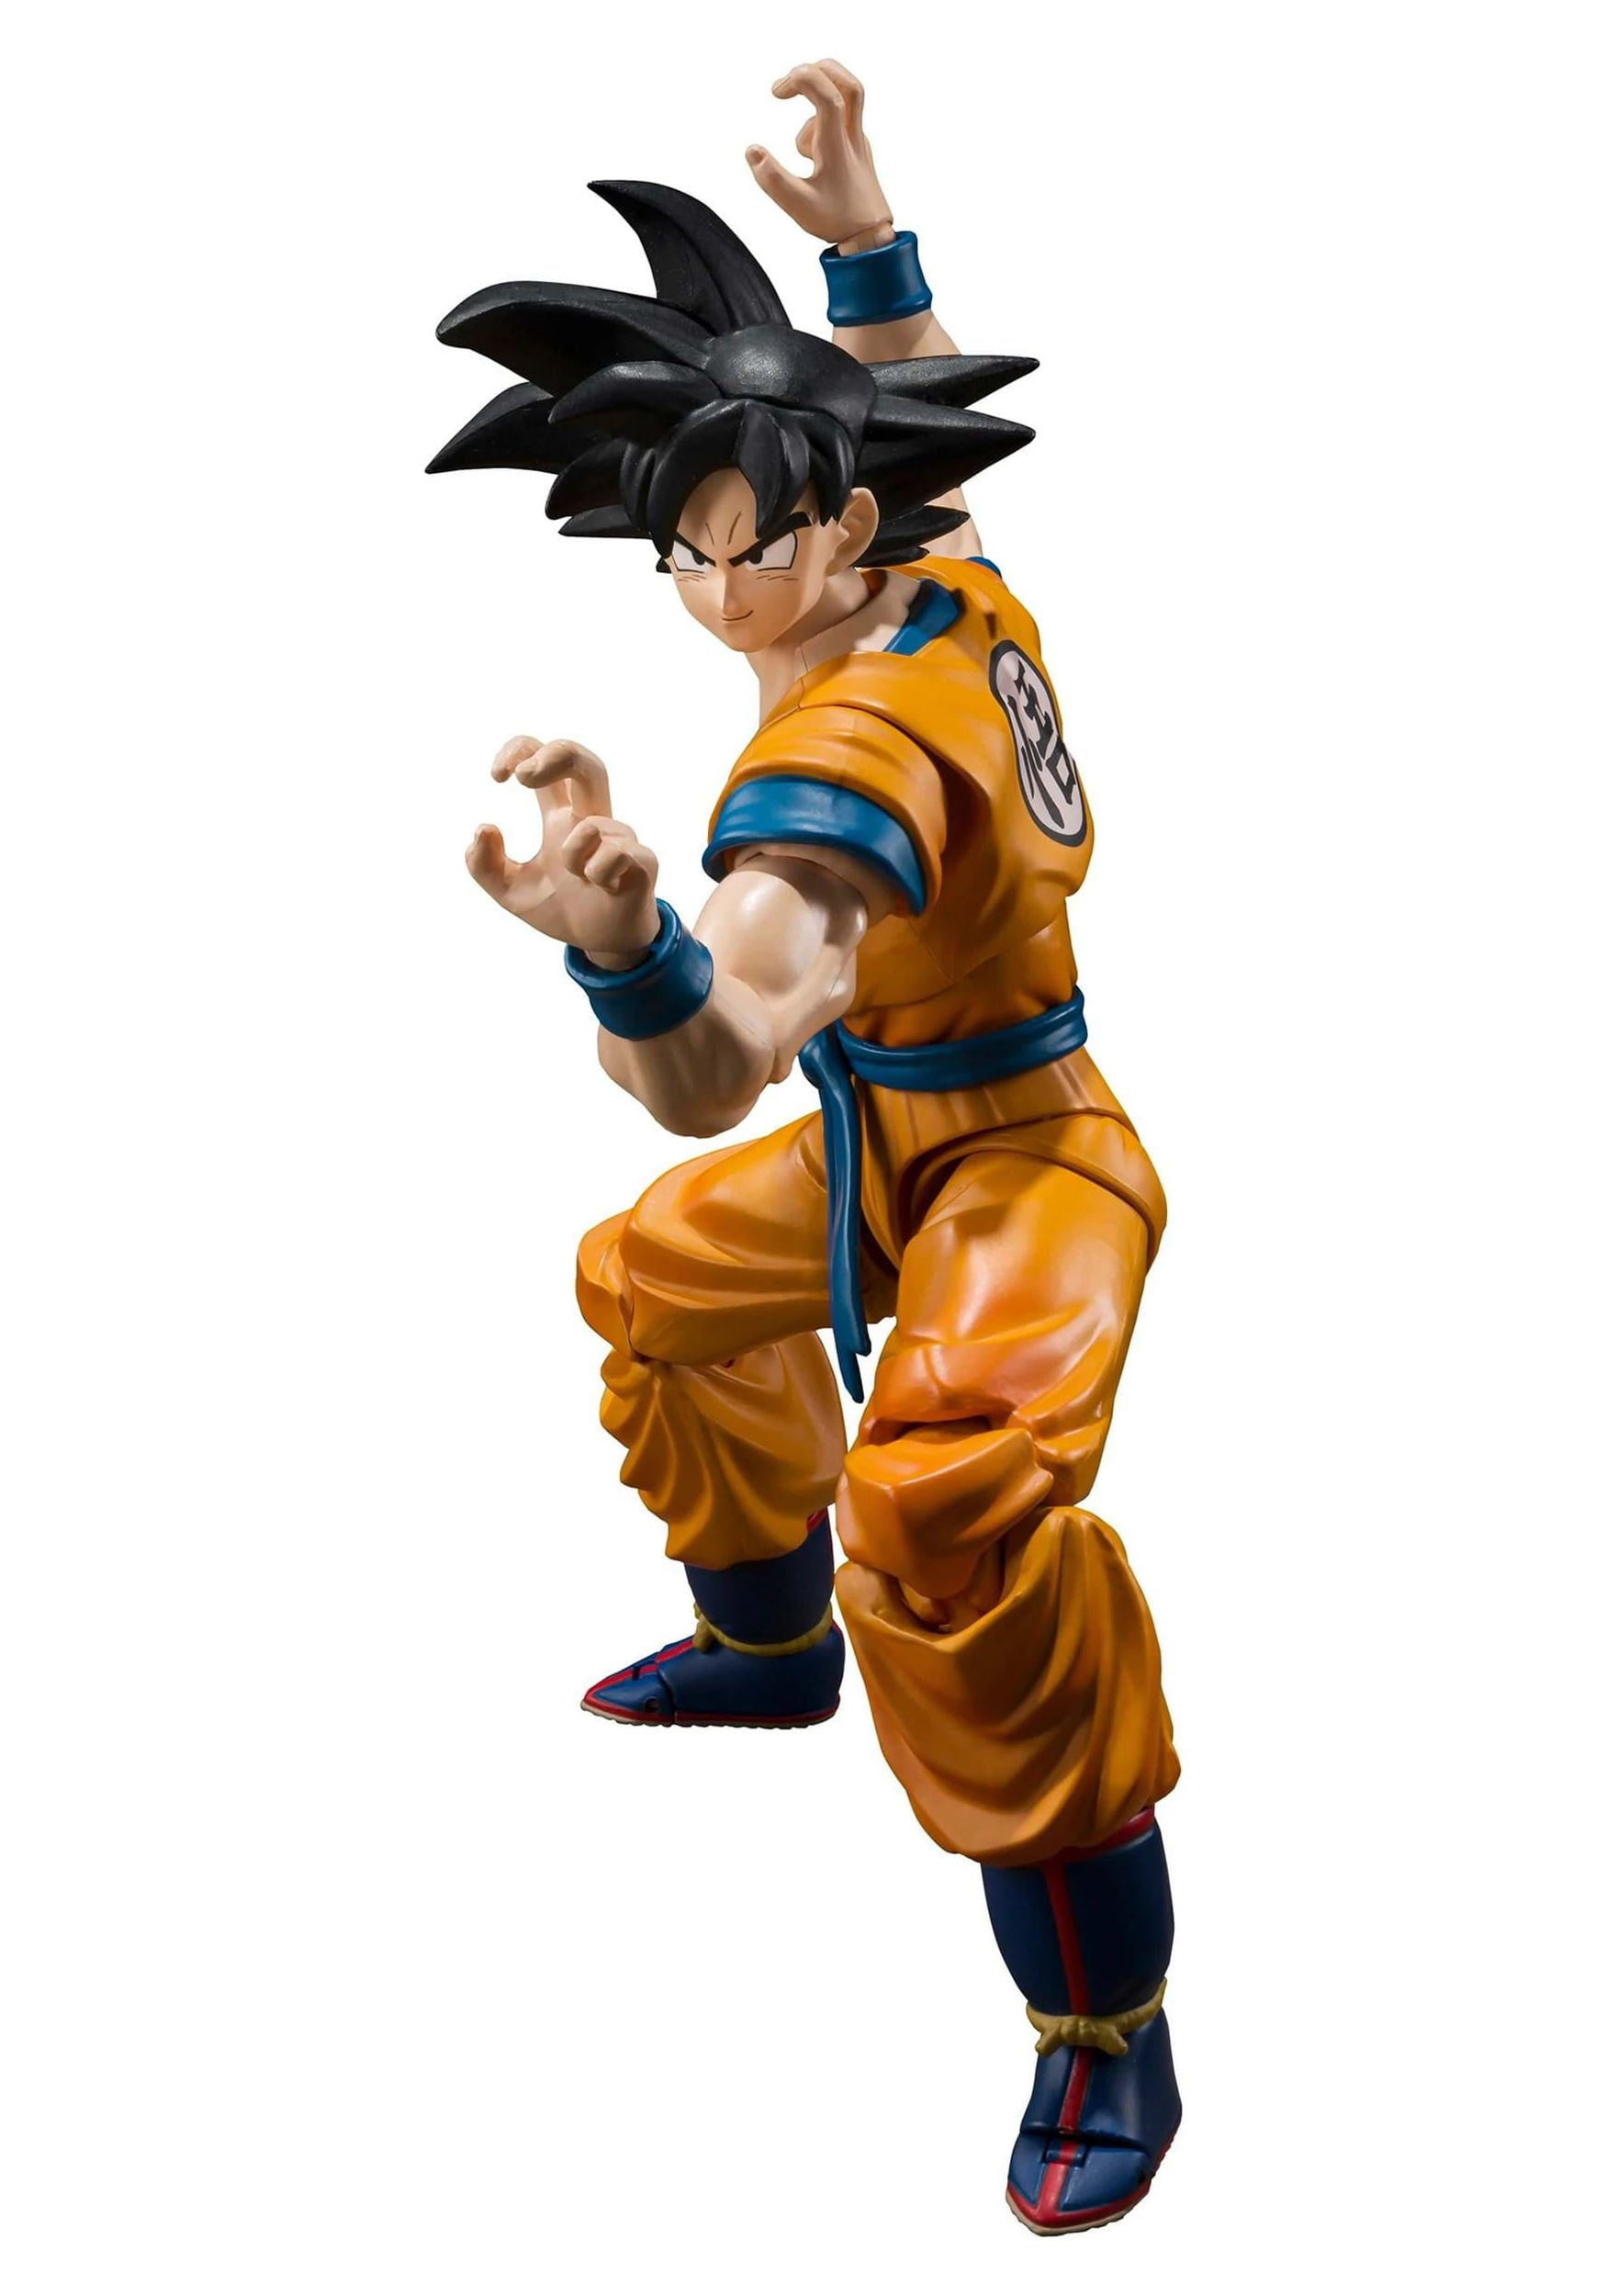 Tamashii Nations - Dragon Ball Super: Super Hero - Son Goku, Bandai Spirits  S.H.Figuarts Action Figure 